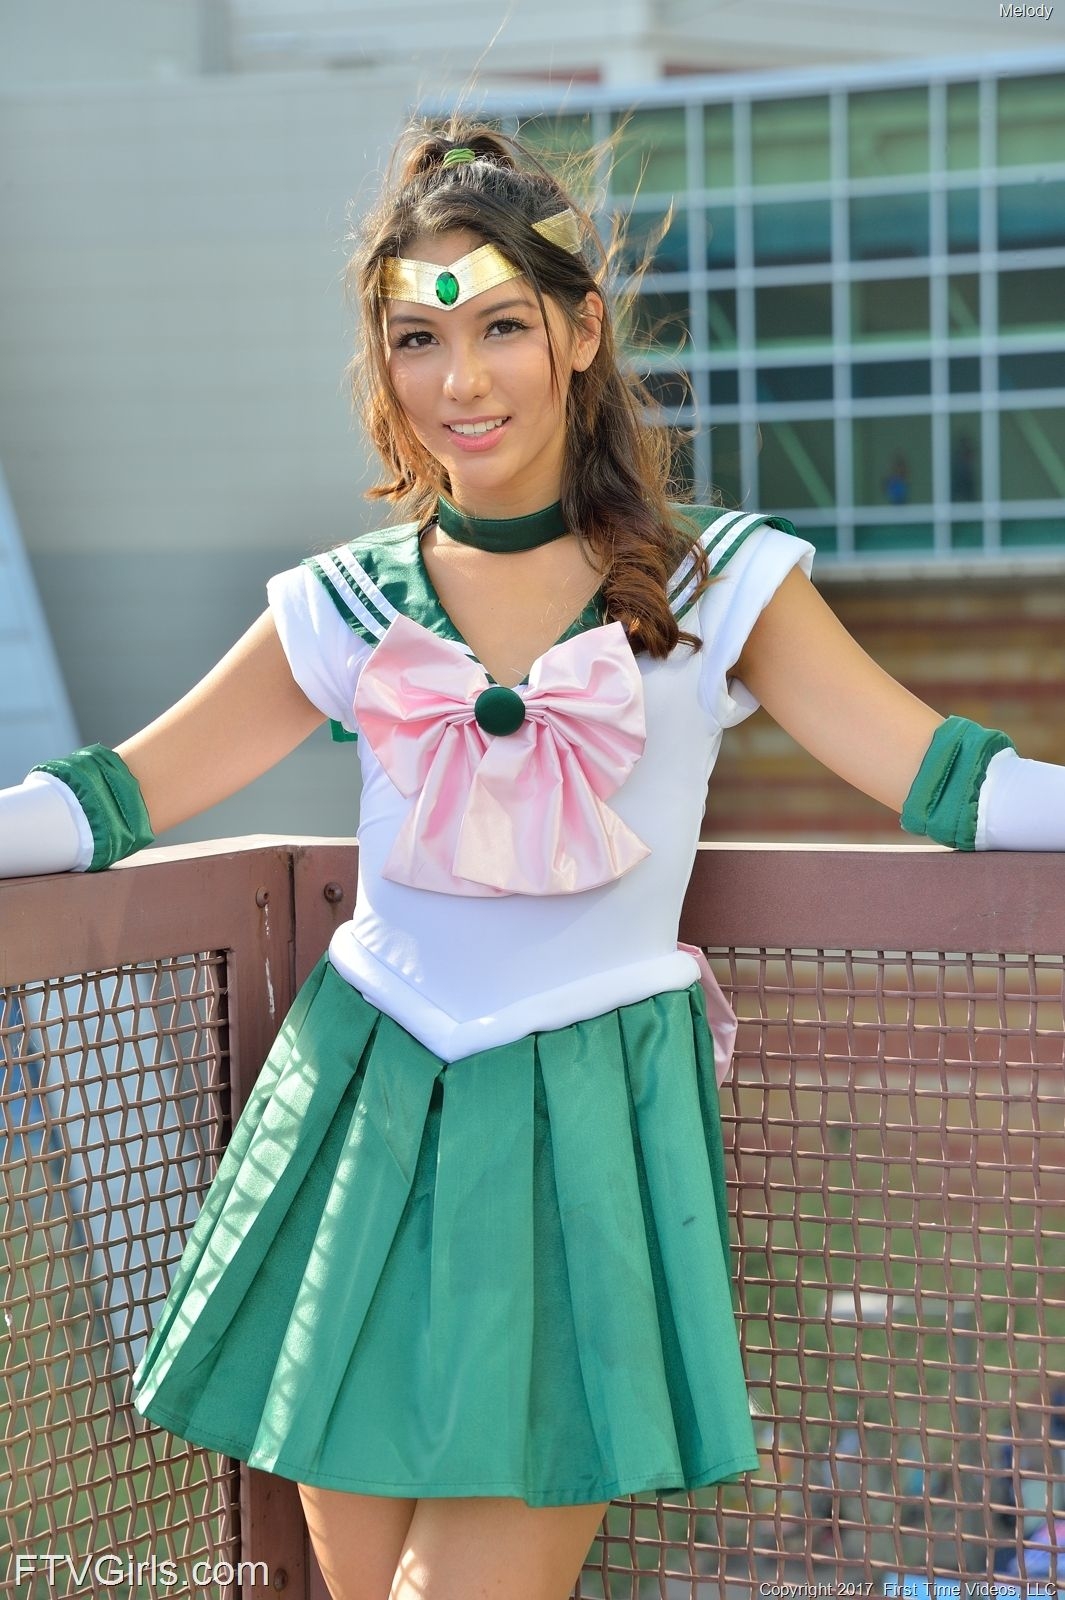 Melody Wylde as Sailor Jupiter 89